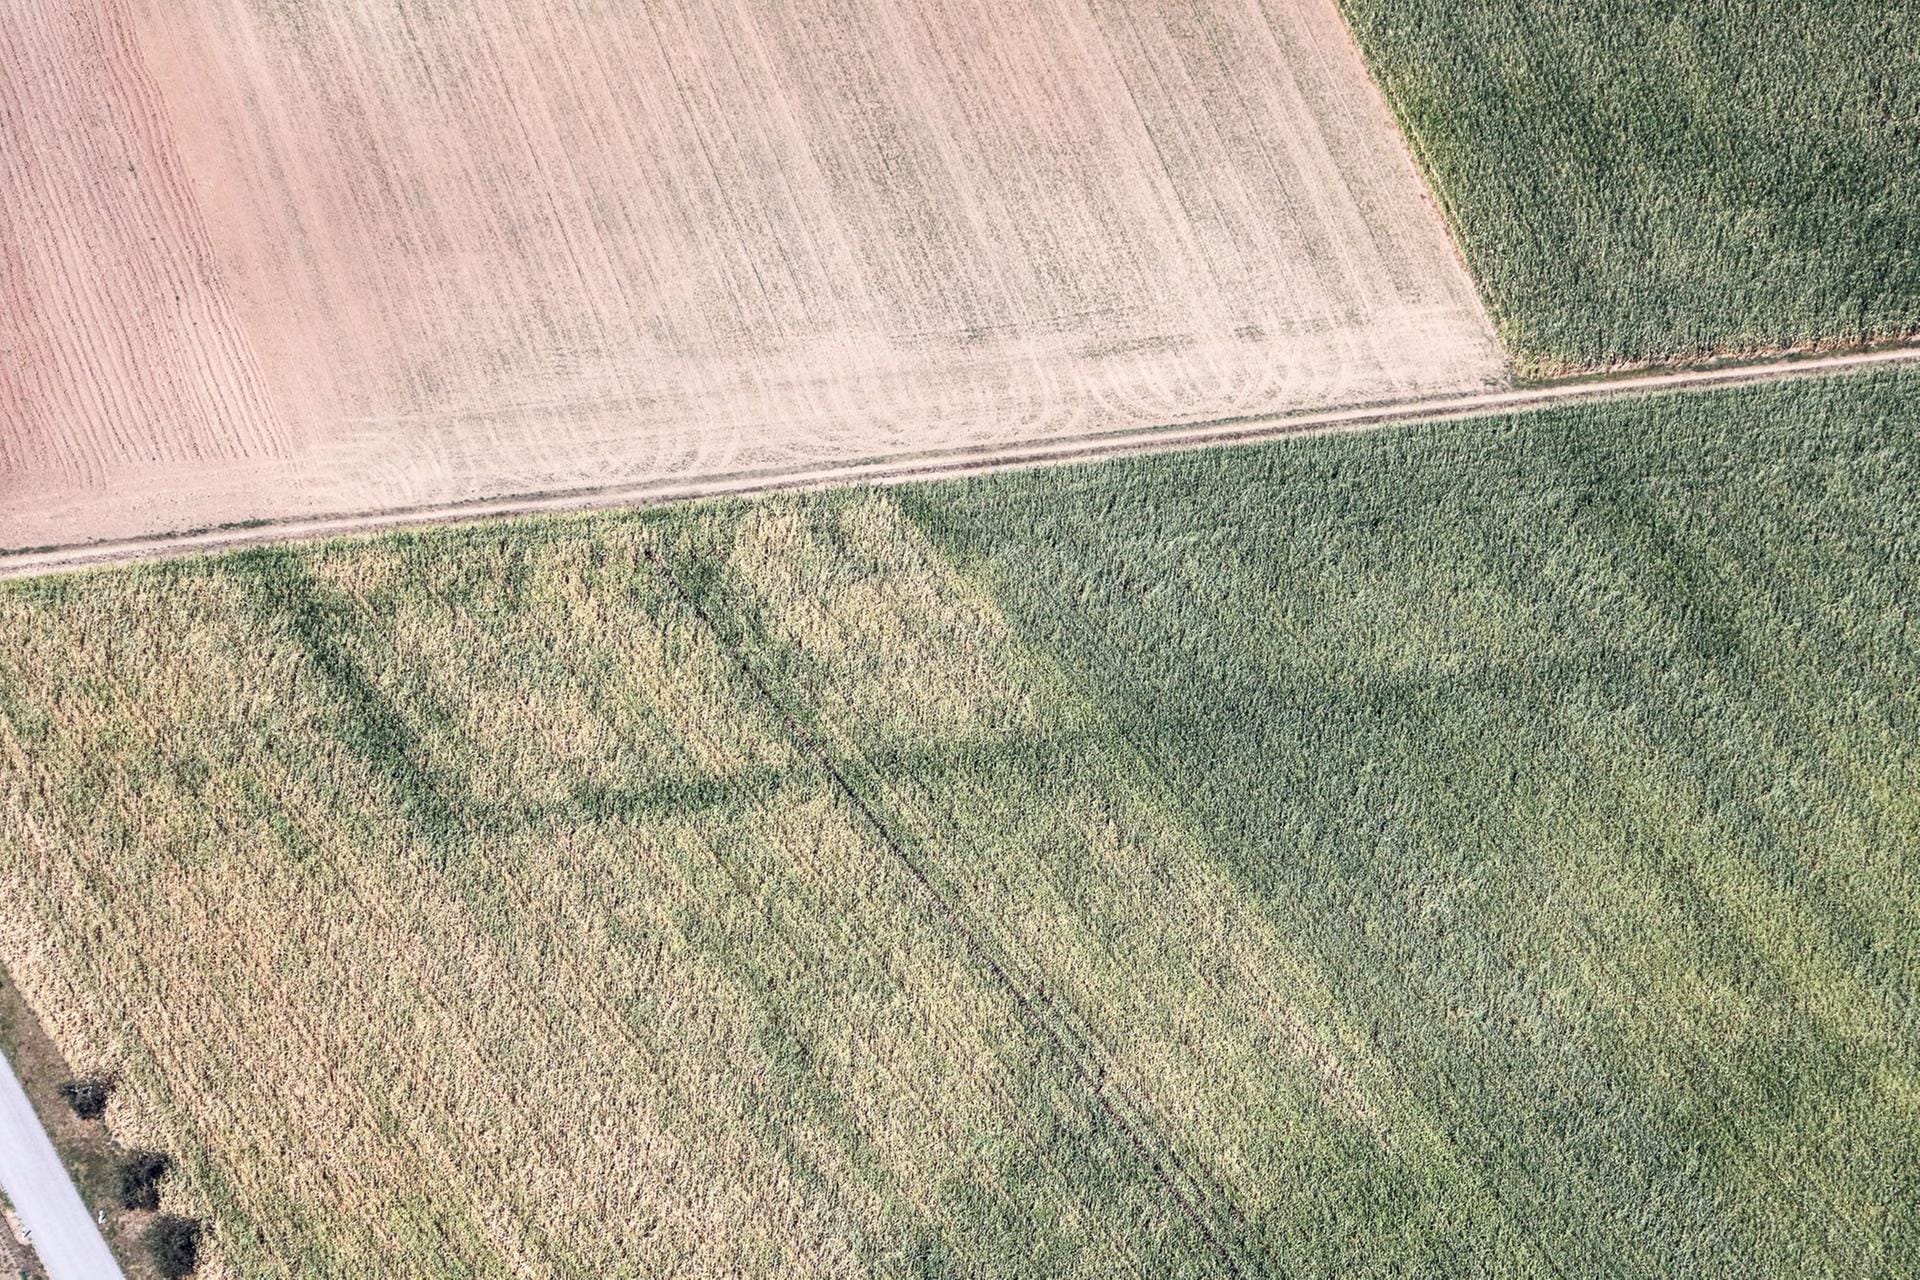 Eine wenige Tage alte Entdeckung: Am Sonntag sah Klaus Leidorf in einem Maisfeld in Bayern dieses Rechteck. Wo der Mais weniger trocken ist, war ein Graben, der zu einer keltischen Viereckschanze gehört haben dürfte.